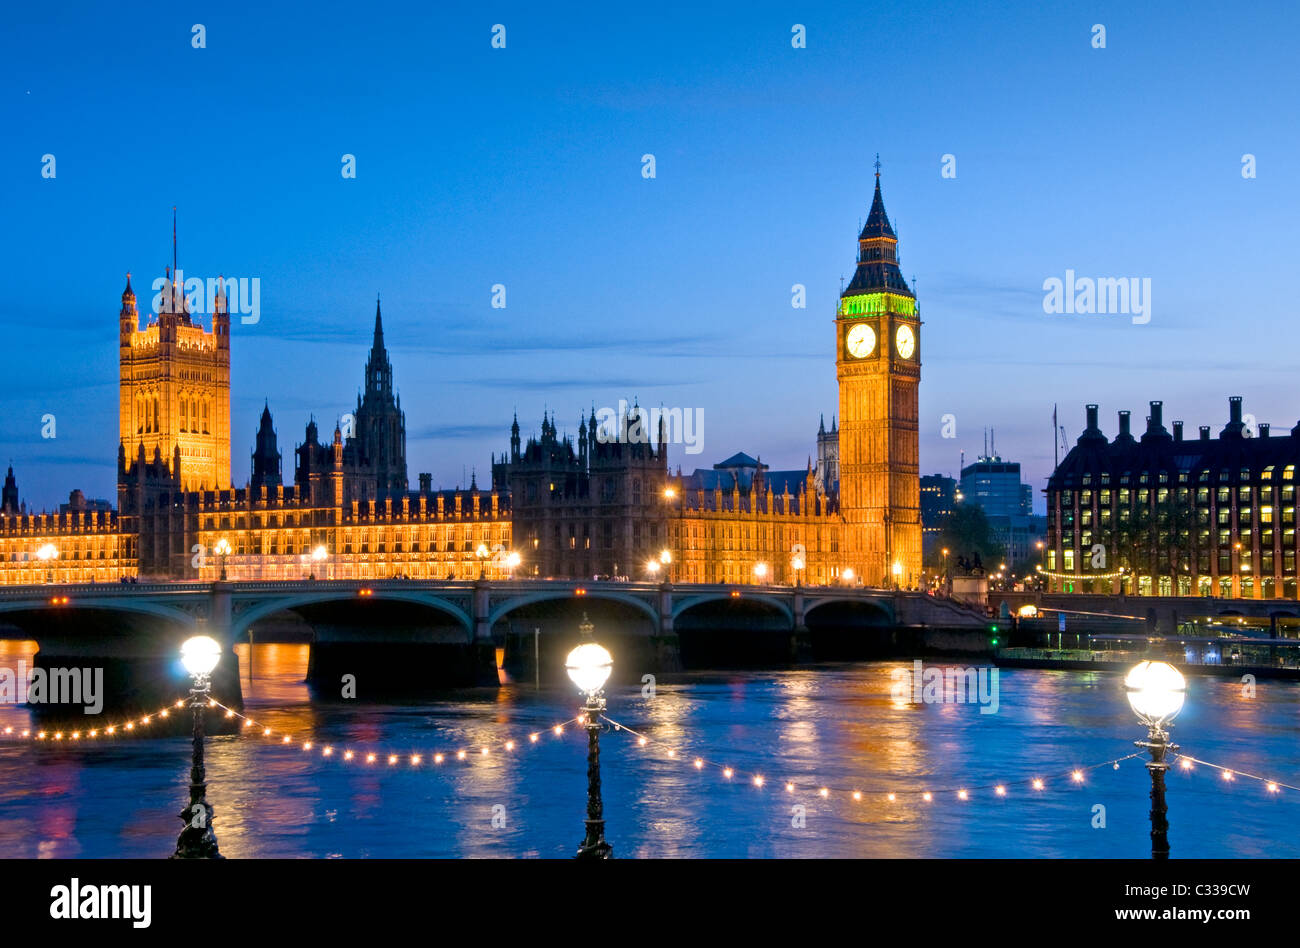 Les chambres du Parlement, Westminster Bridge et la Tamise de nuit, London, England, UK Banque D'Images